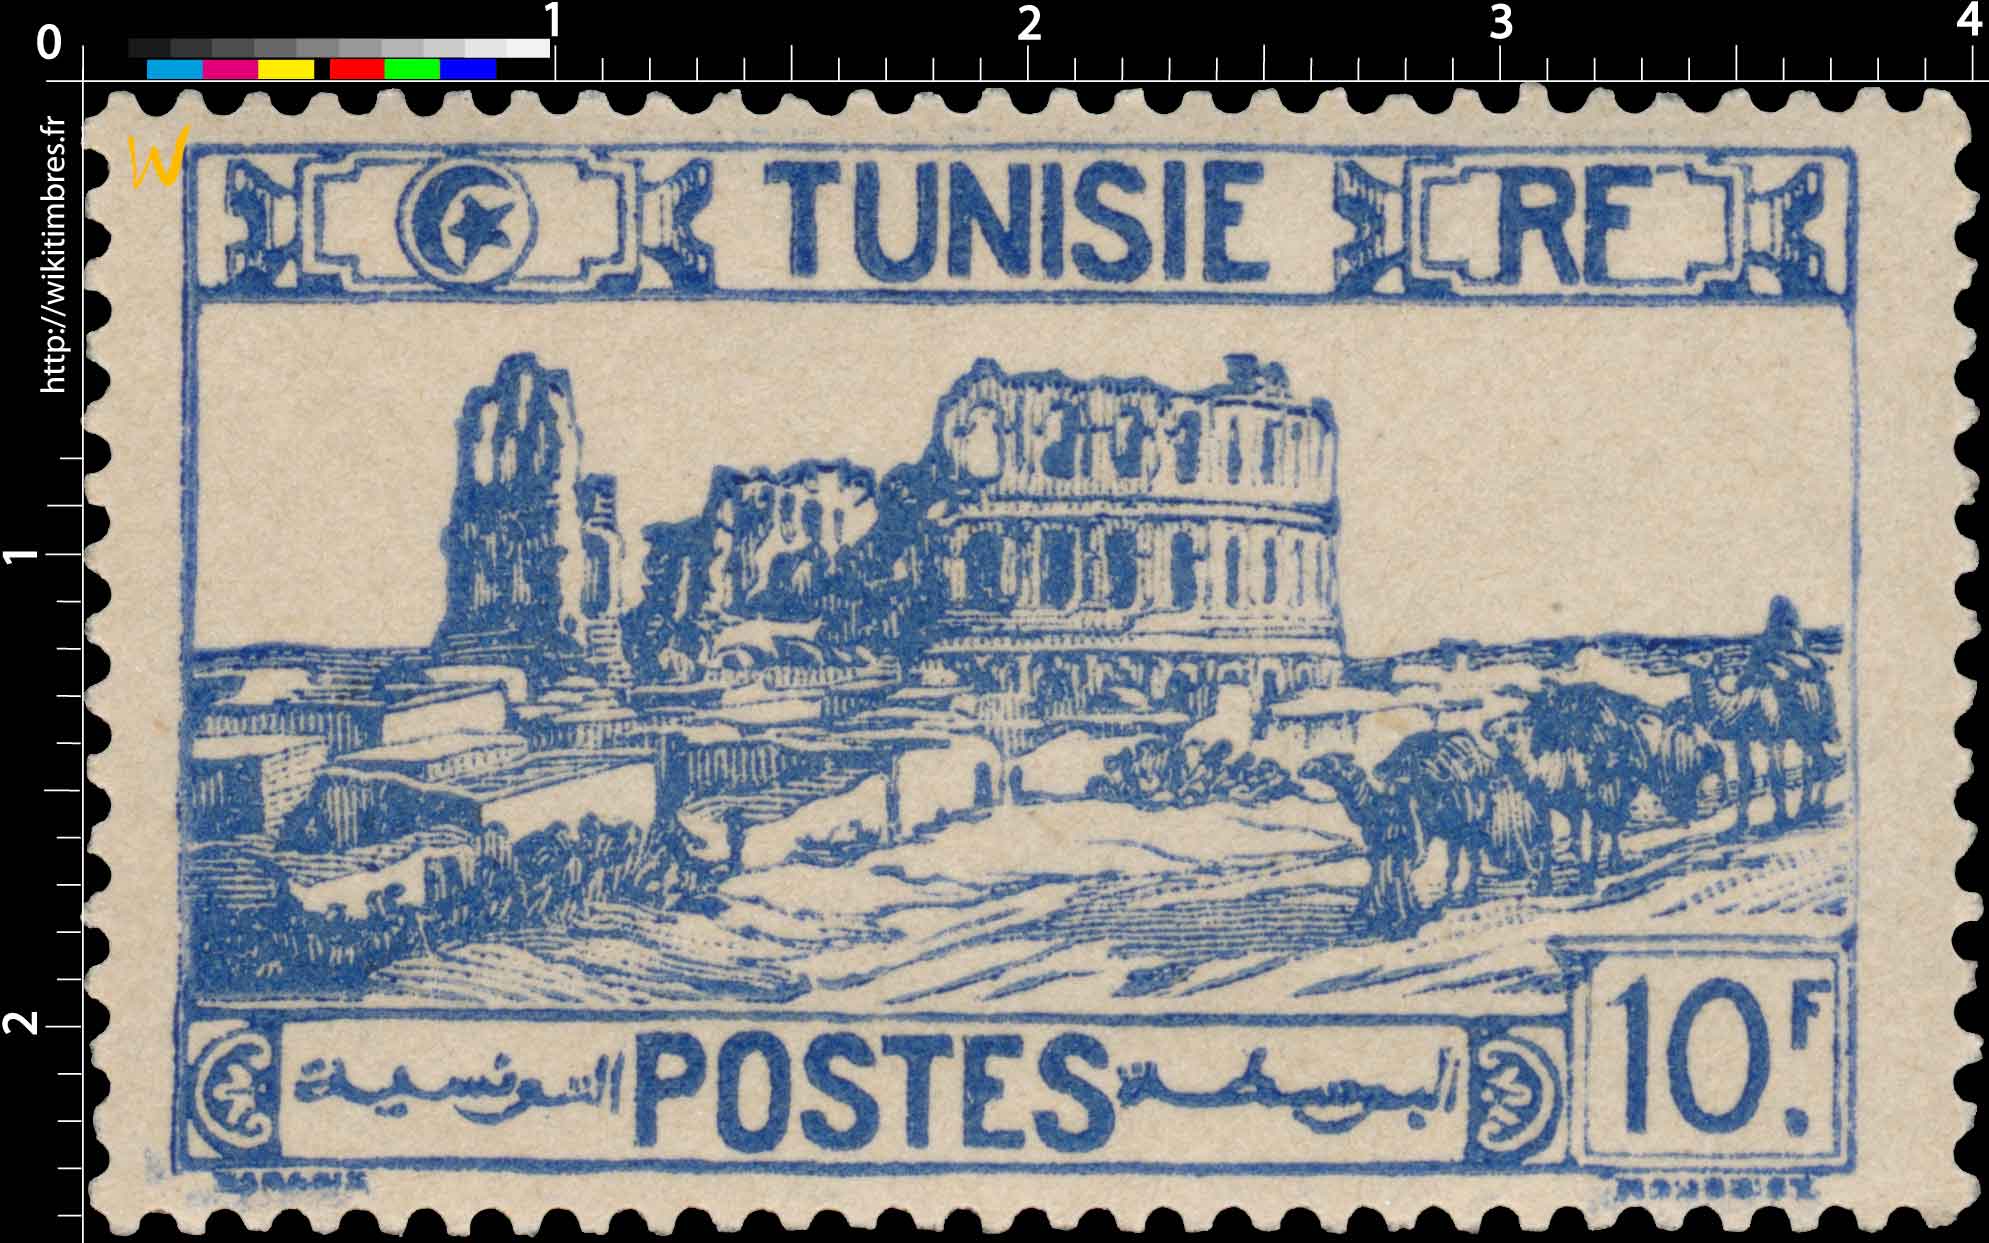 Tunisie - type amphithéâtre d'El Djem